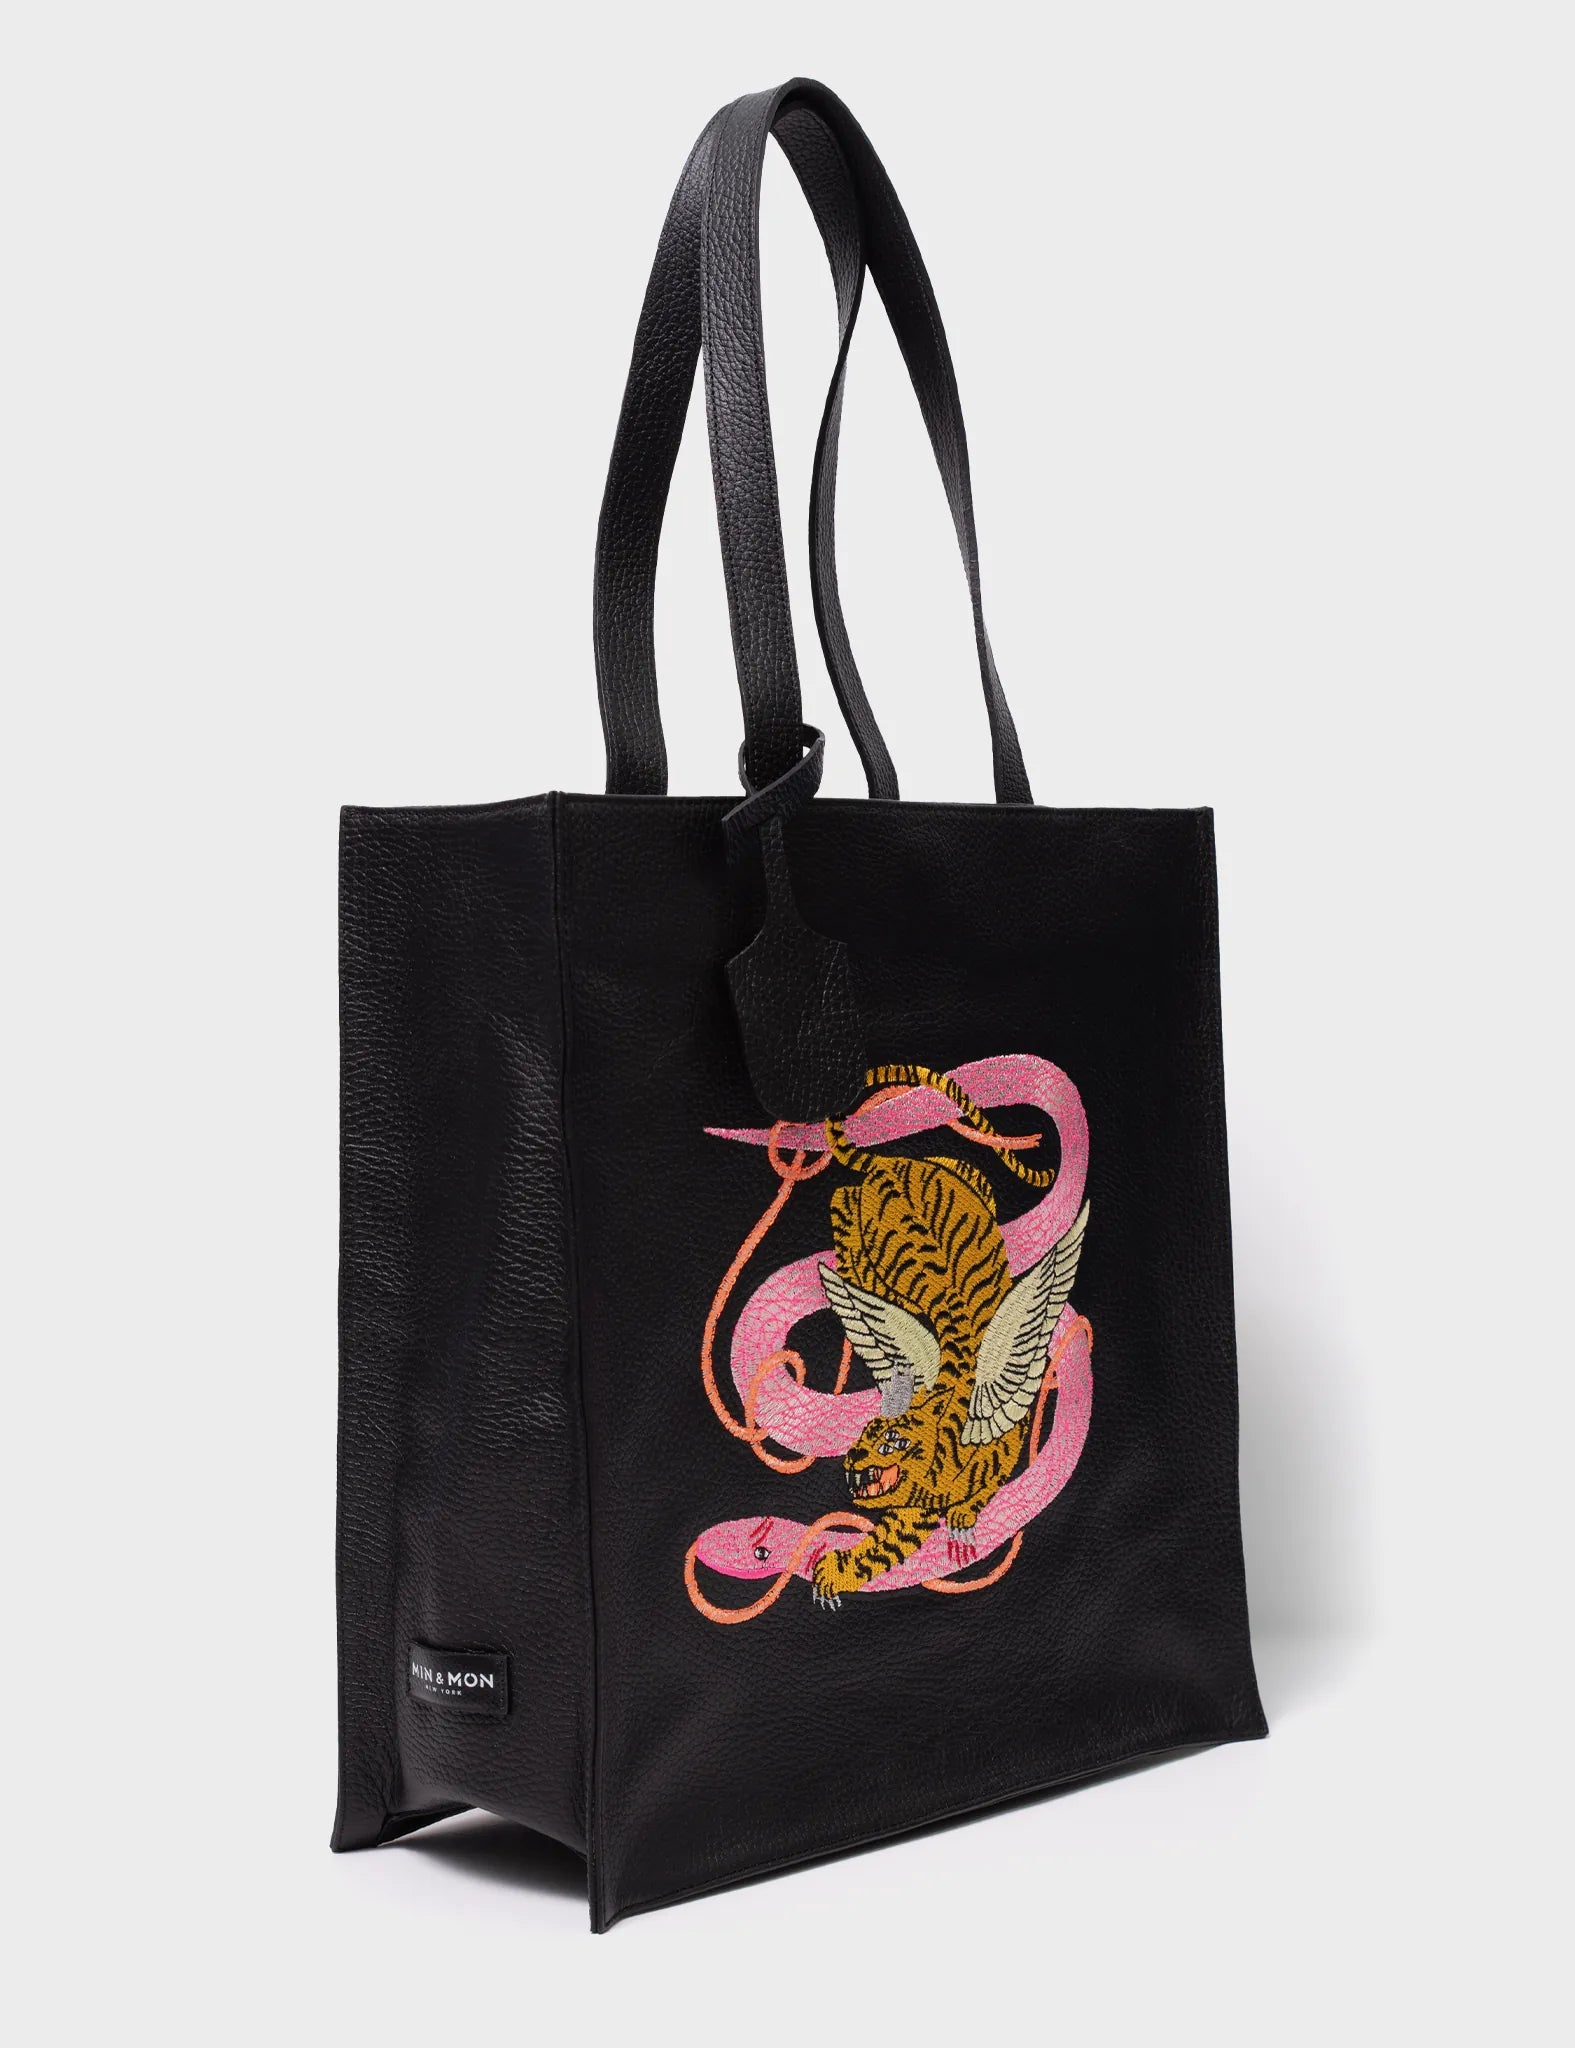 Black Leather Tote Bag - Tangled Tiger & Snake Print Original Design